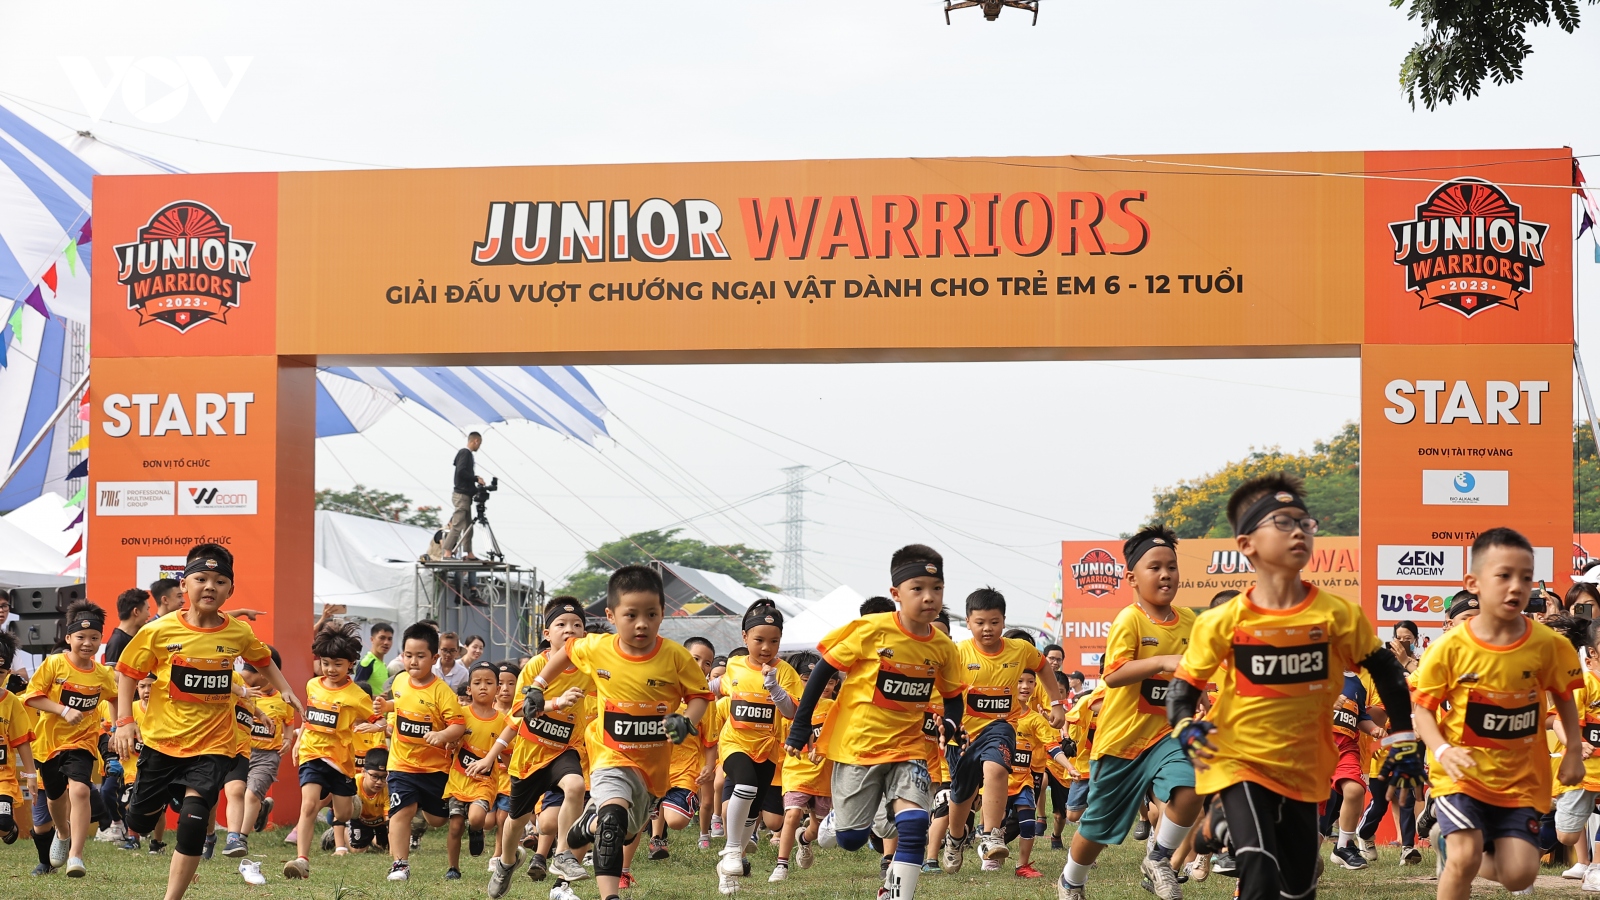 Sôi động Junior Warriors - Giải đấu vượt chướng ngại vật cho trẻ em